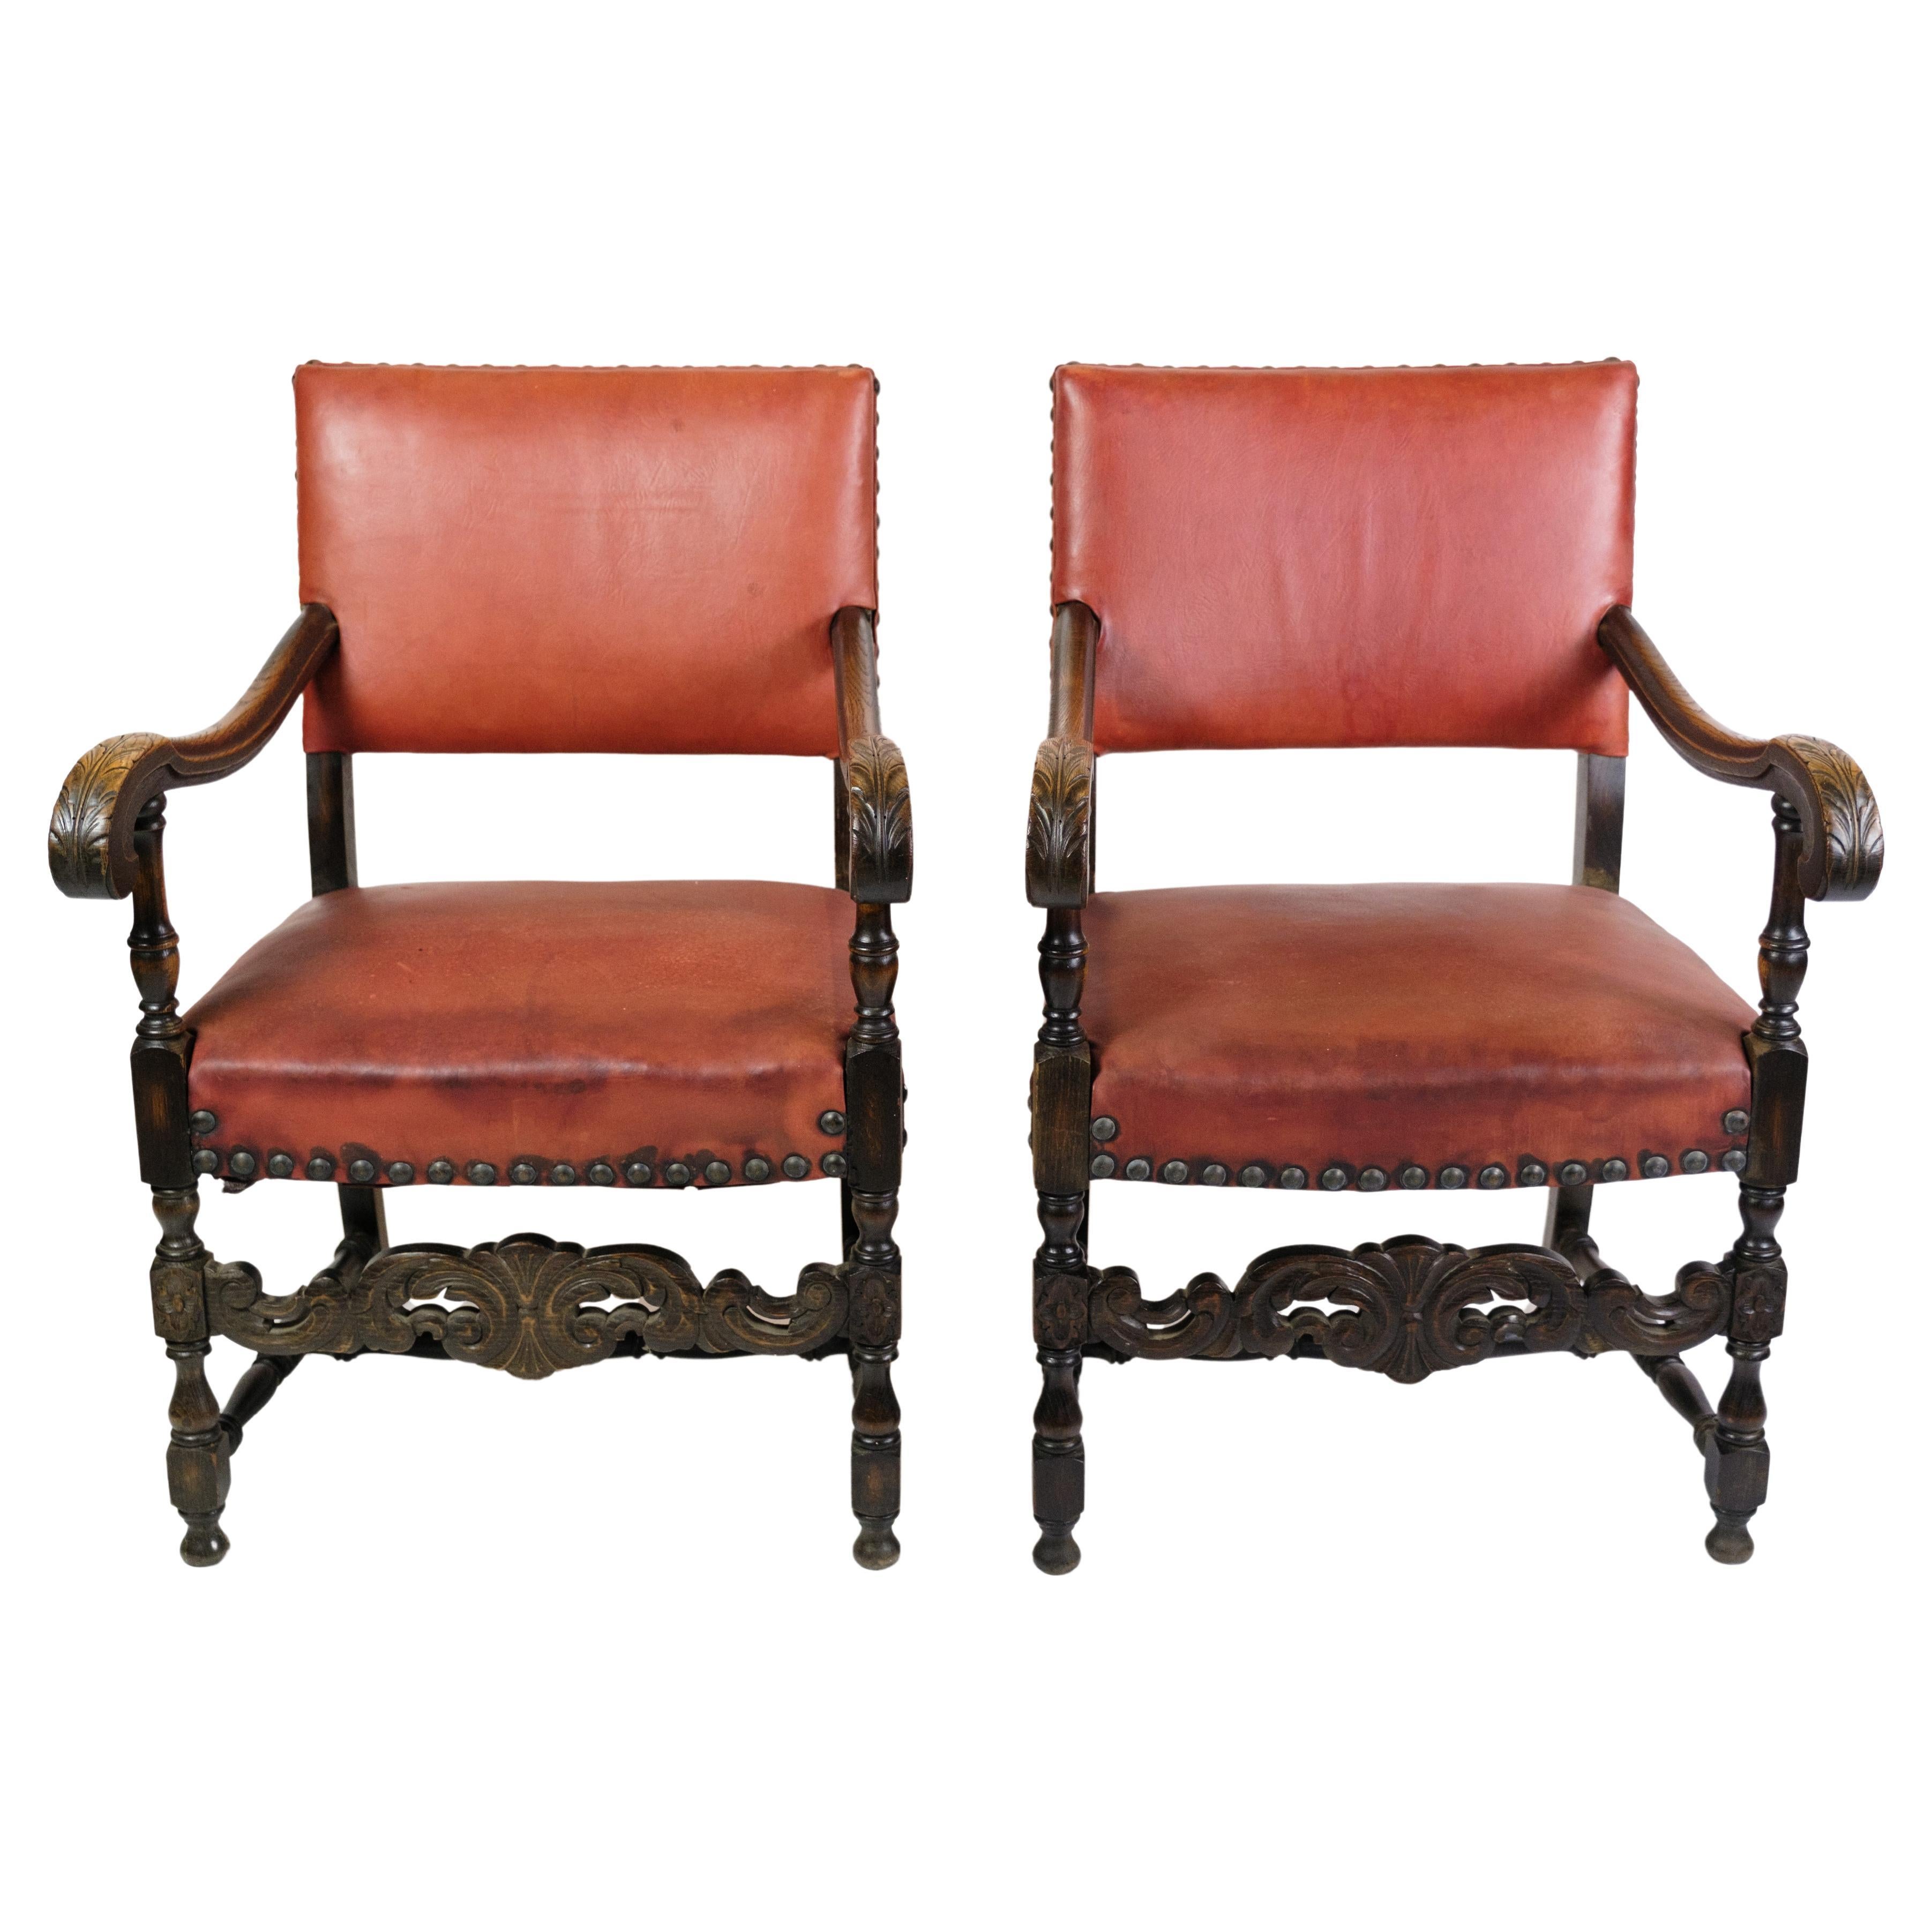 Satz von 2 antiken Sesseln aus Eiche und mit rotem Leder aus den 1930er Jahren